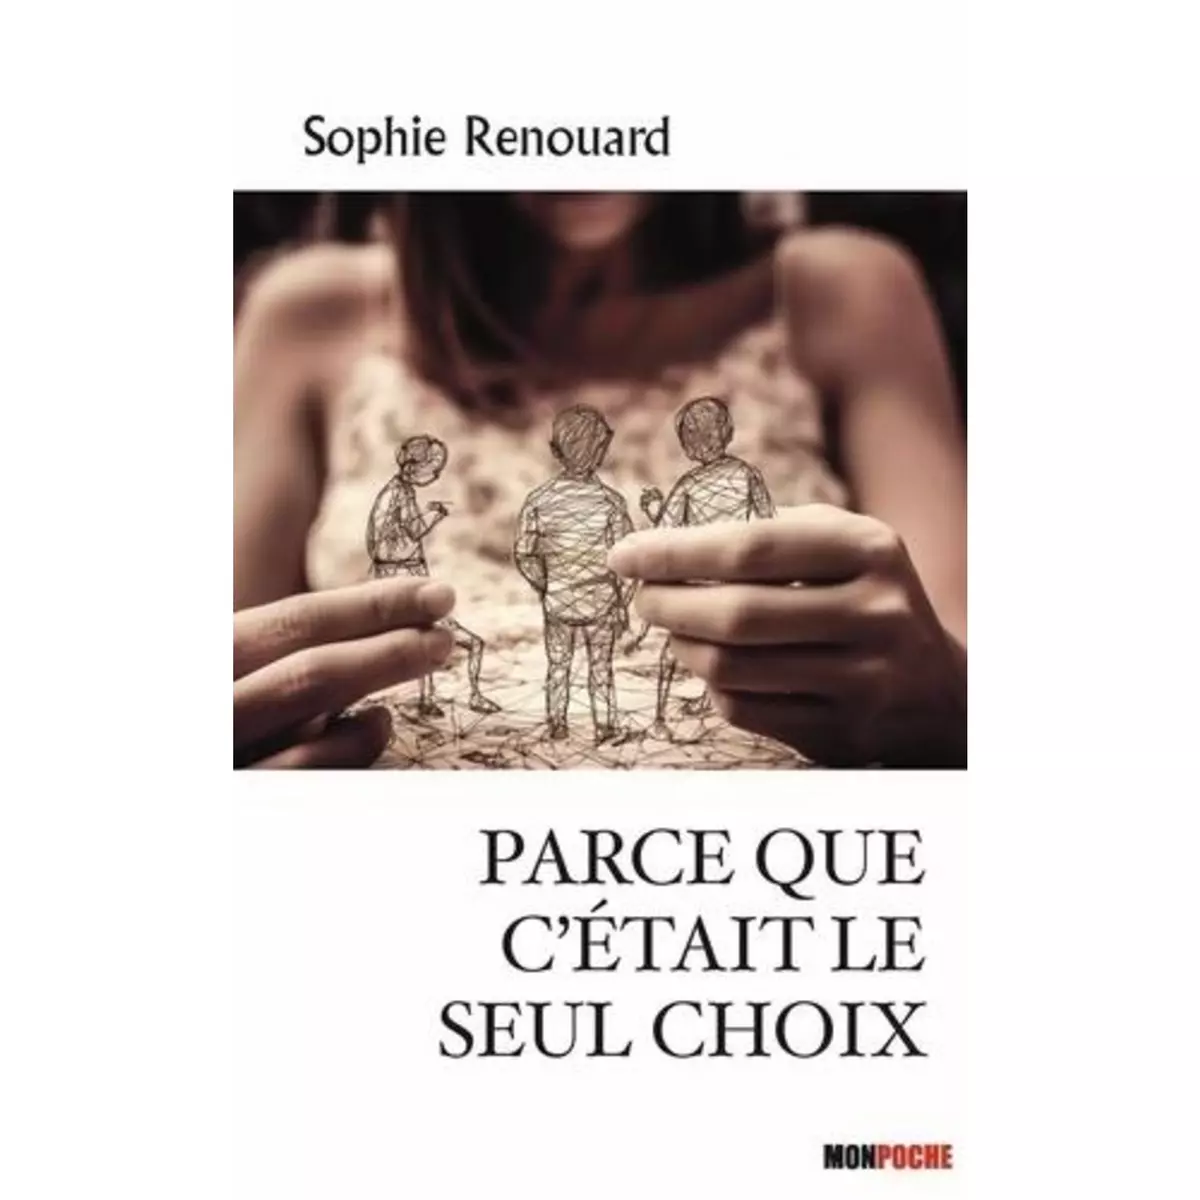  PARCE QUE C'ETAIT LE SEUL CHOIX, Renouard Sophie